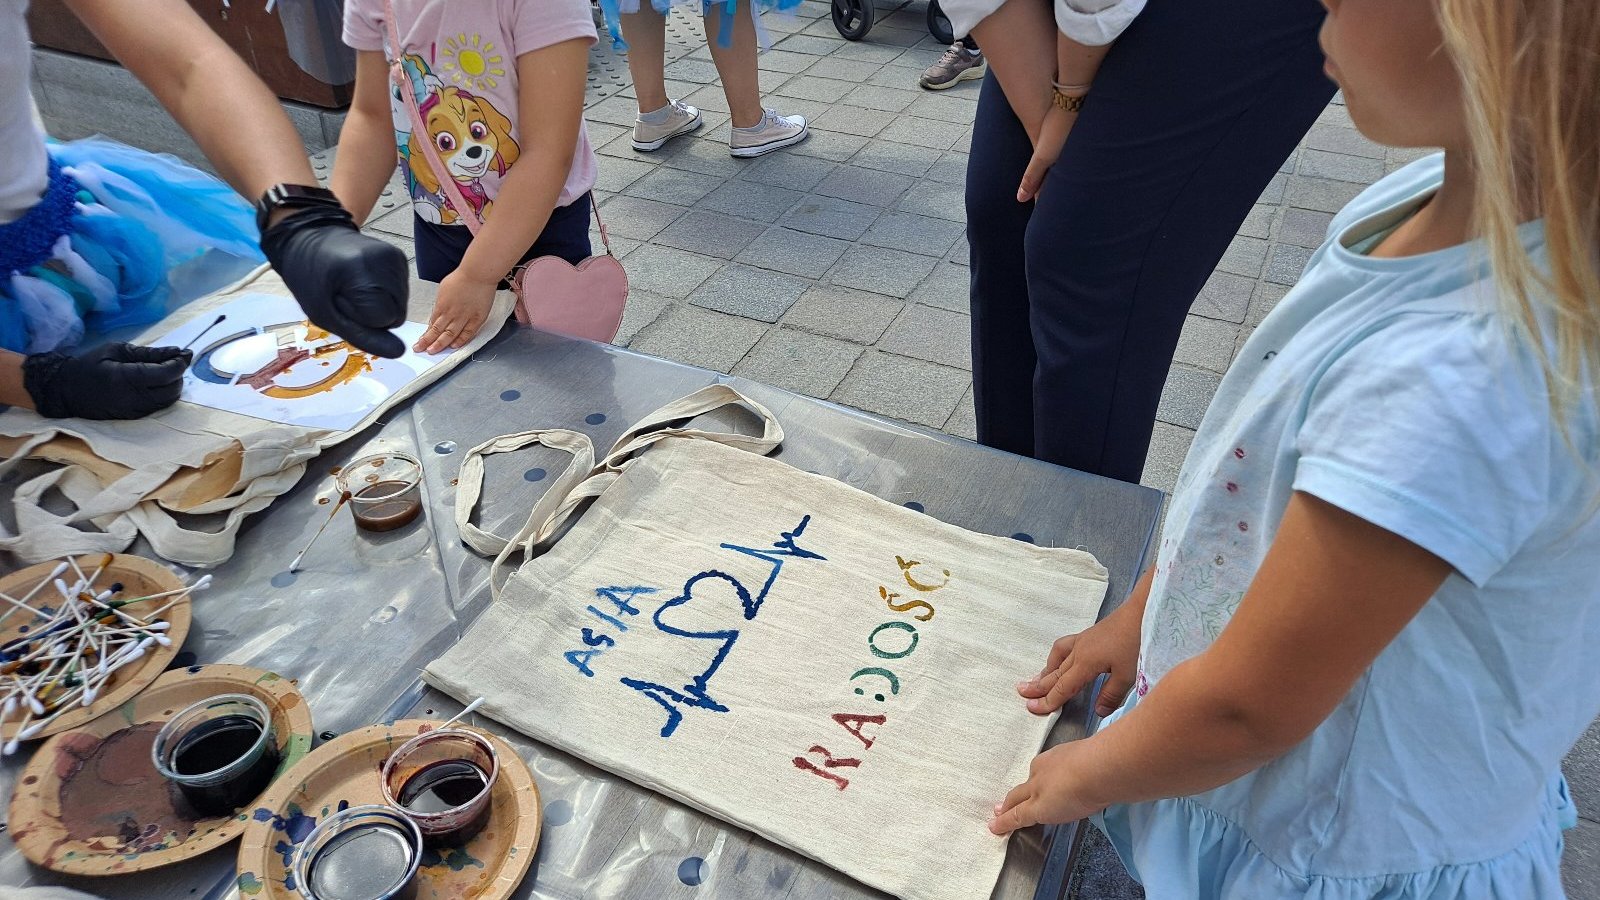 Na zdjeciu dzieci tworzące rękodzieło, dziewczynka trzyma dłonie na torbie z napisem: Asia, Radość